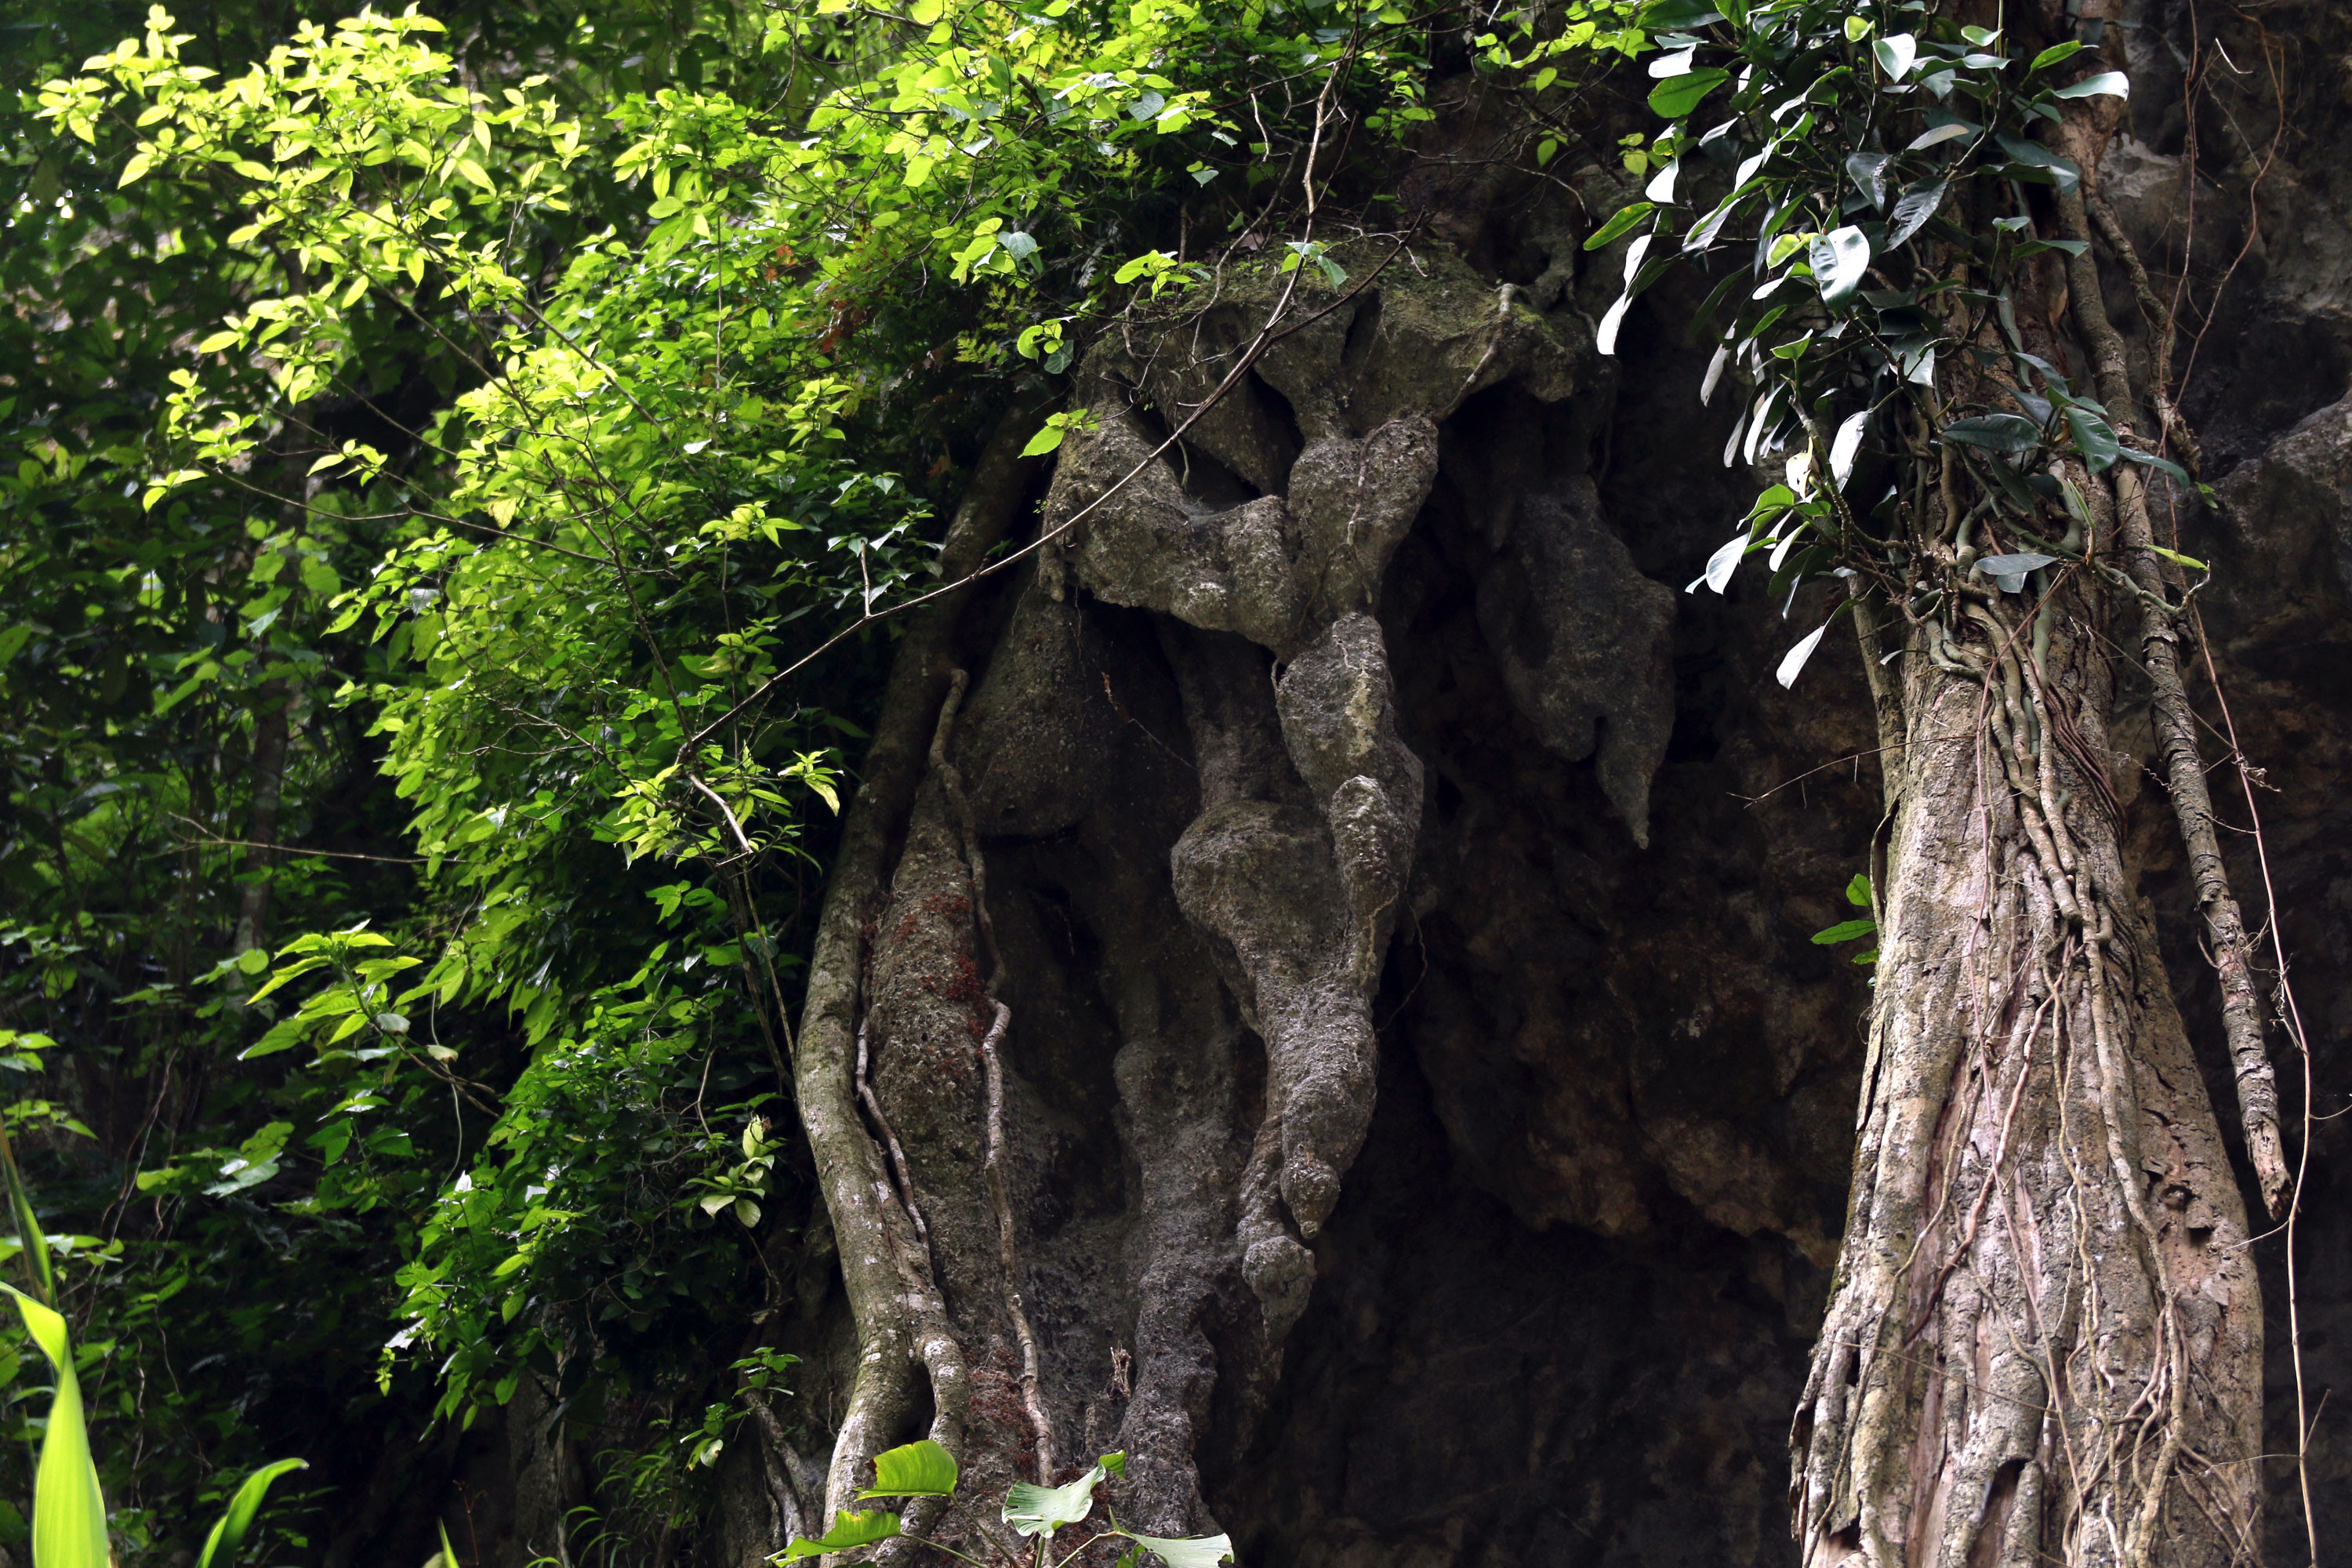 Nhiều loại cây cổ thụ, cây dây leo bám chằng chịt trên đá tạo nên sự hoang sơ giữa núi rừng. Ảnh: Đào Thọ